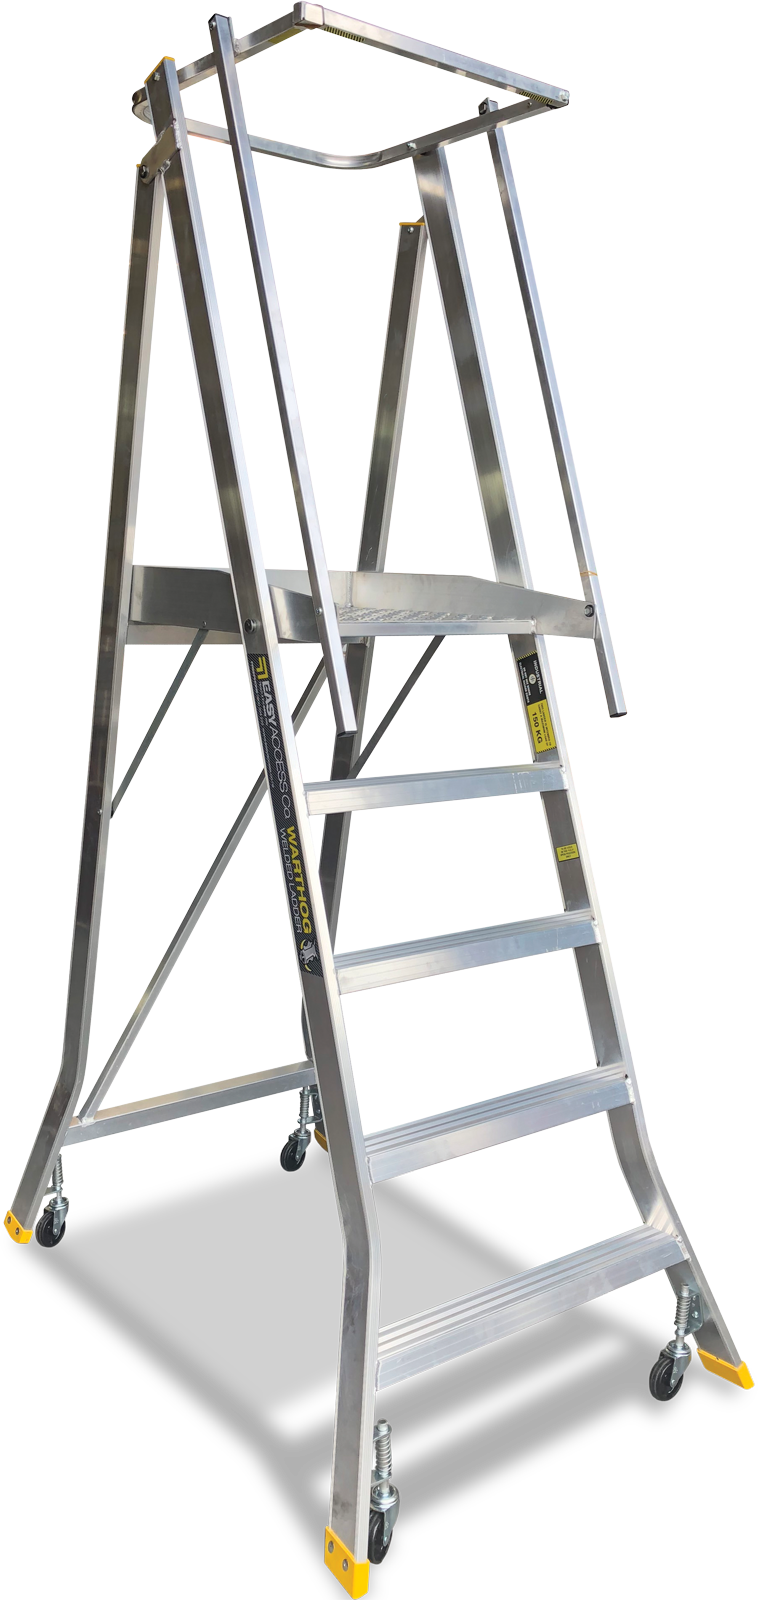 Platform Ladder with Spring back wheels